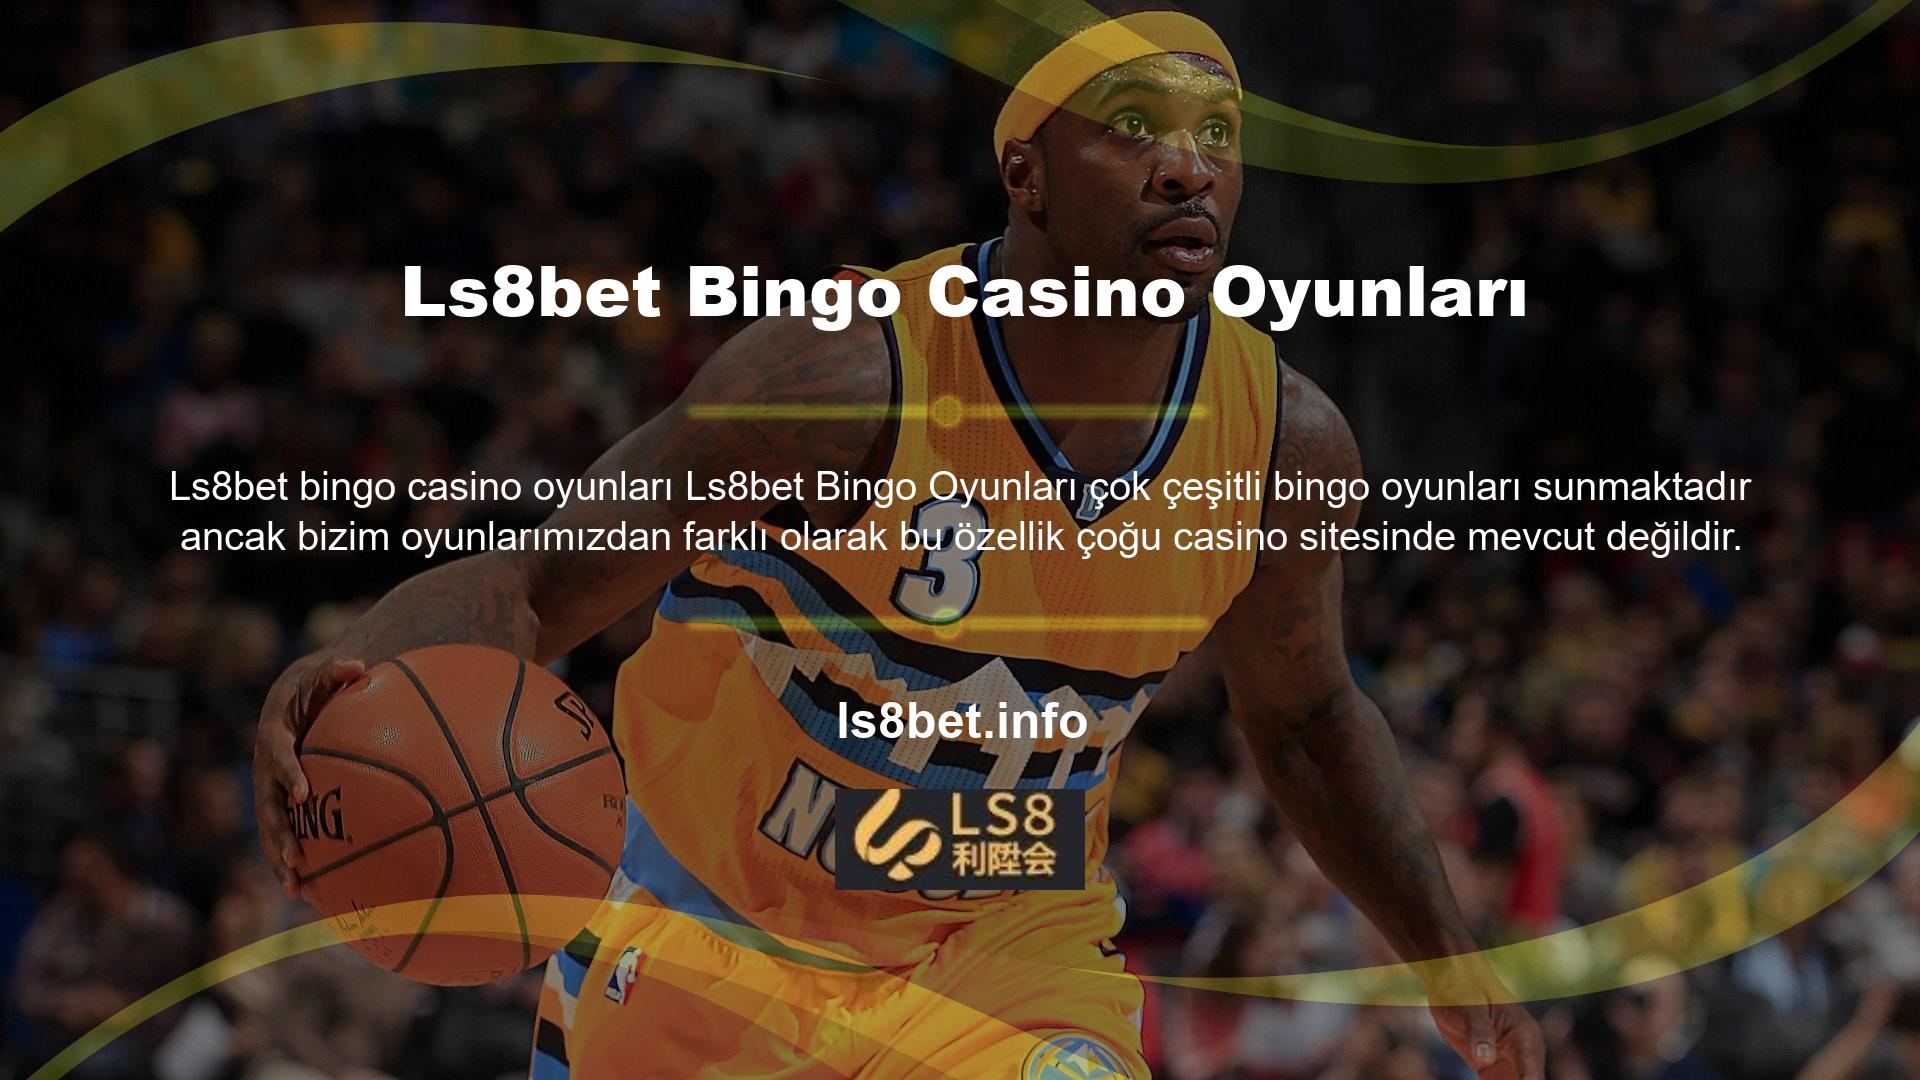 Sitemiz kullanıcılara yüzlerce farklı türde casino ve spor bahis sitesi sunarak bingo bahislerinin eğlenceli bir yolunu sunar